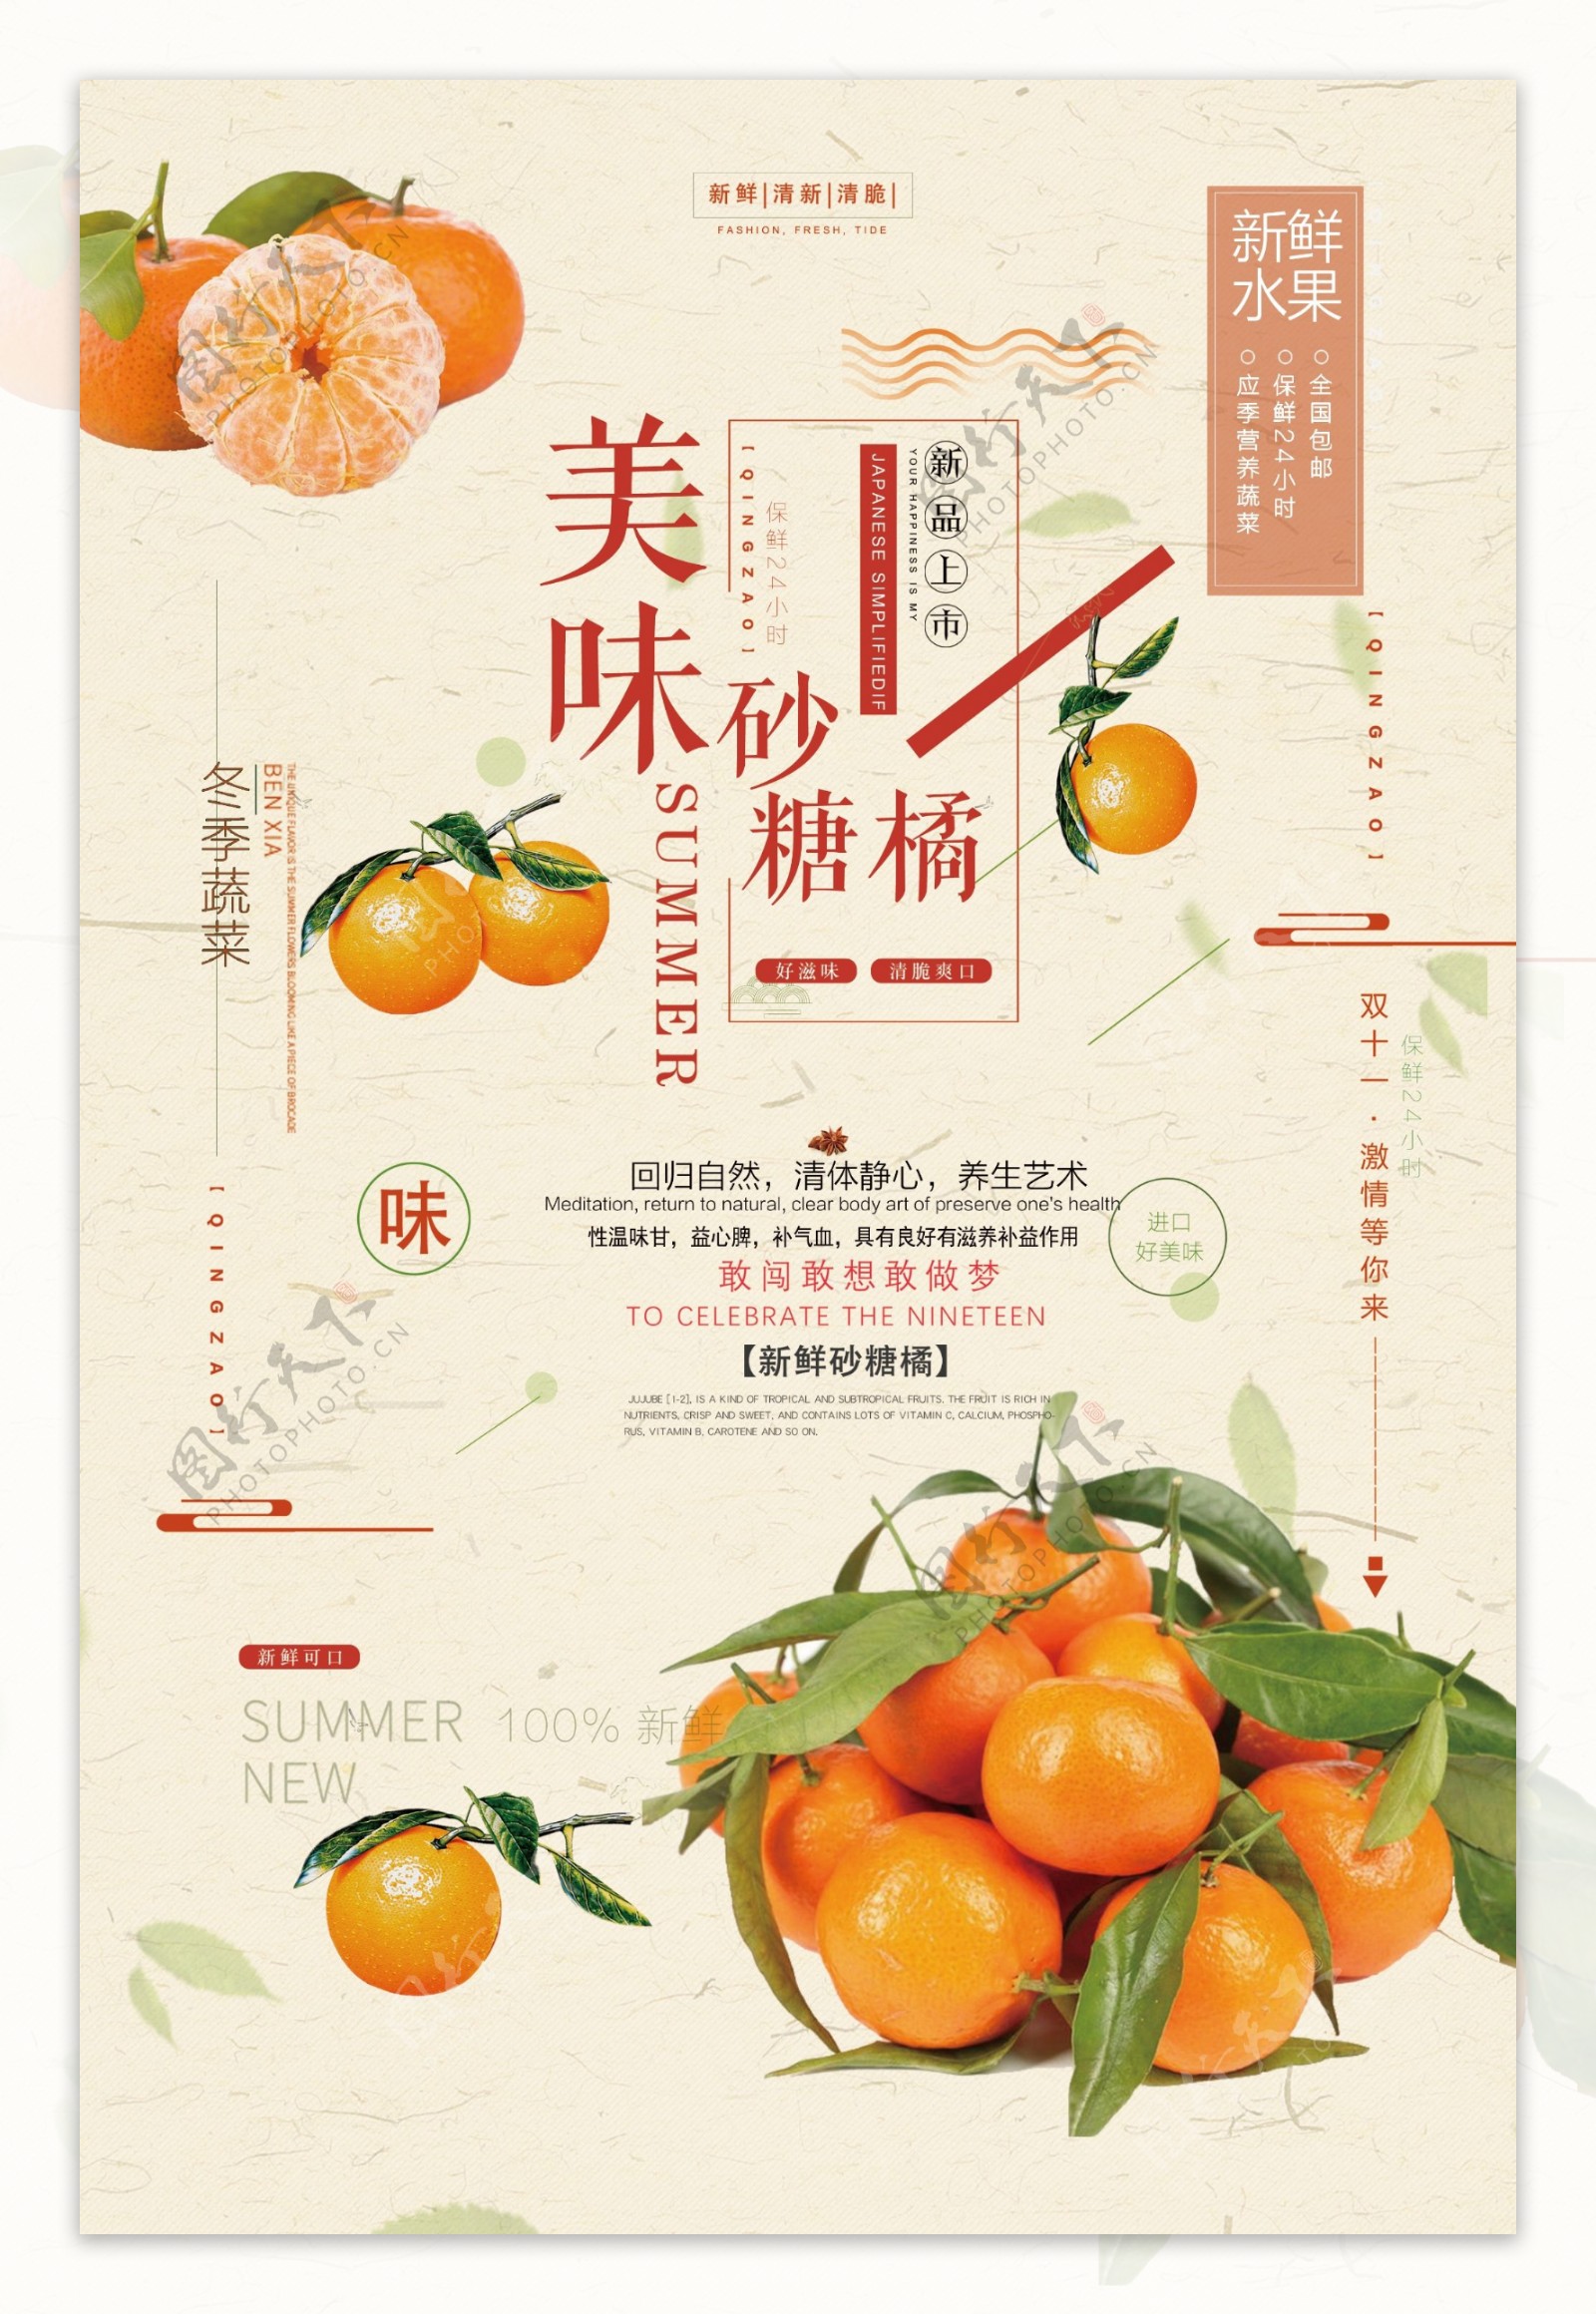 最新活力橙色美味砂糖橘子新鲜水果海报模板